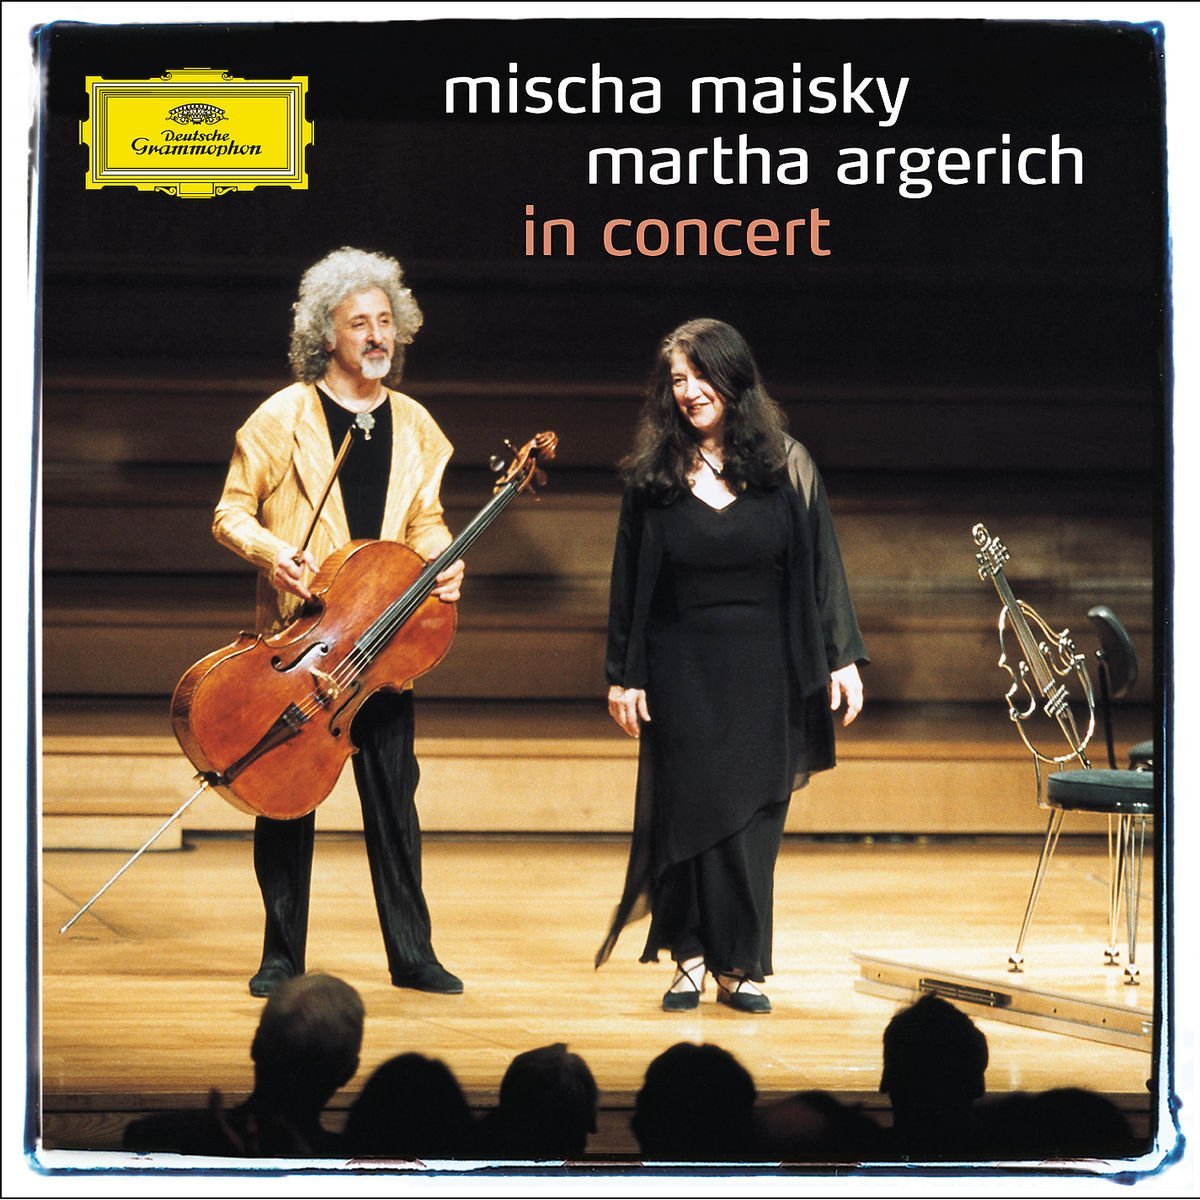 In Concert | Martha Argerich, Sergei Prokofiev, Dmitri Shostakovich